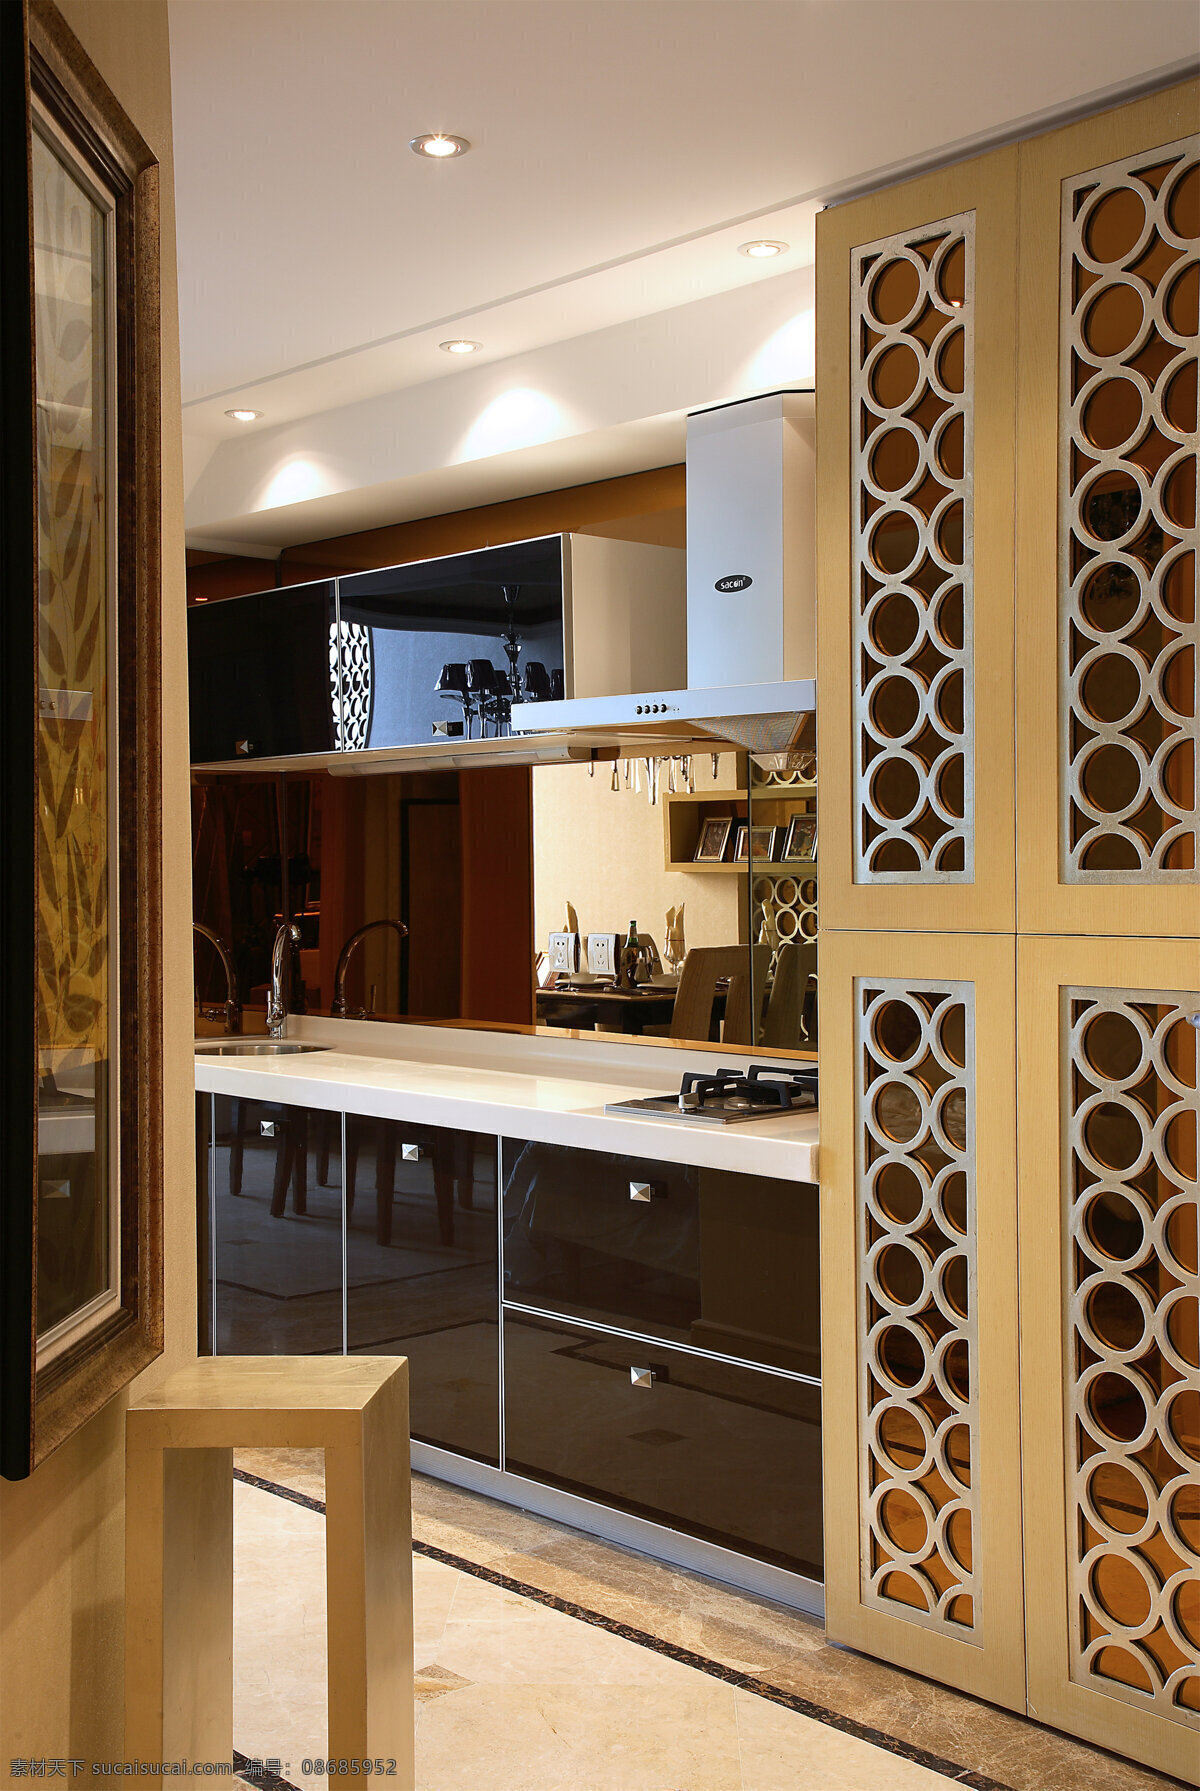 时尚 室内 厨房 橱柜 设计图 家居 家居生活 室内设计 装修 家具 装修设计 环境设计 效果图